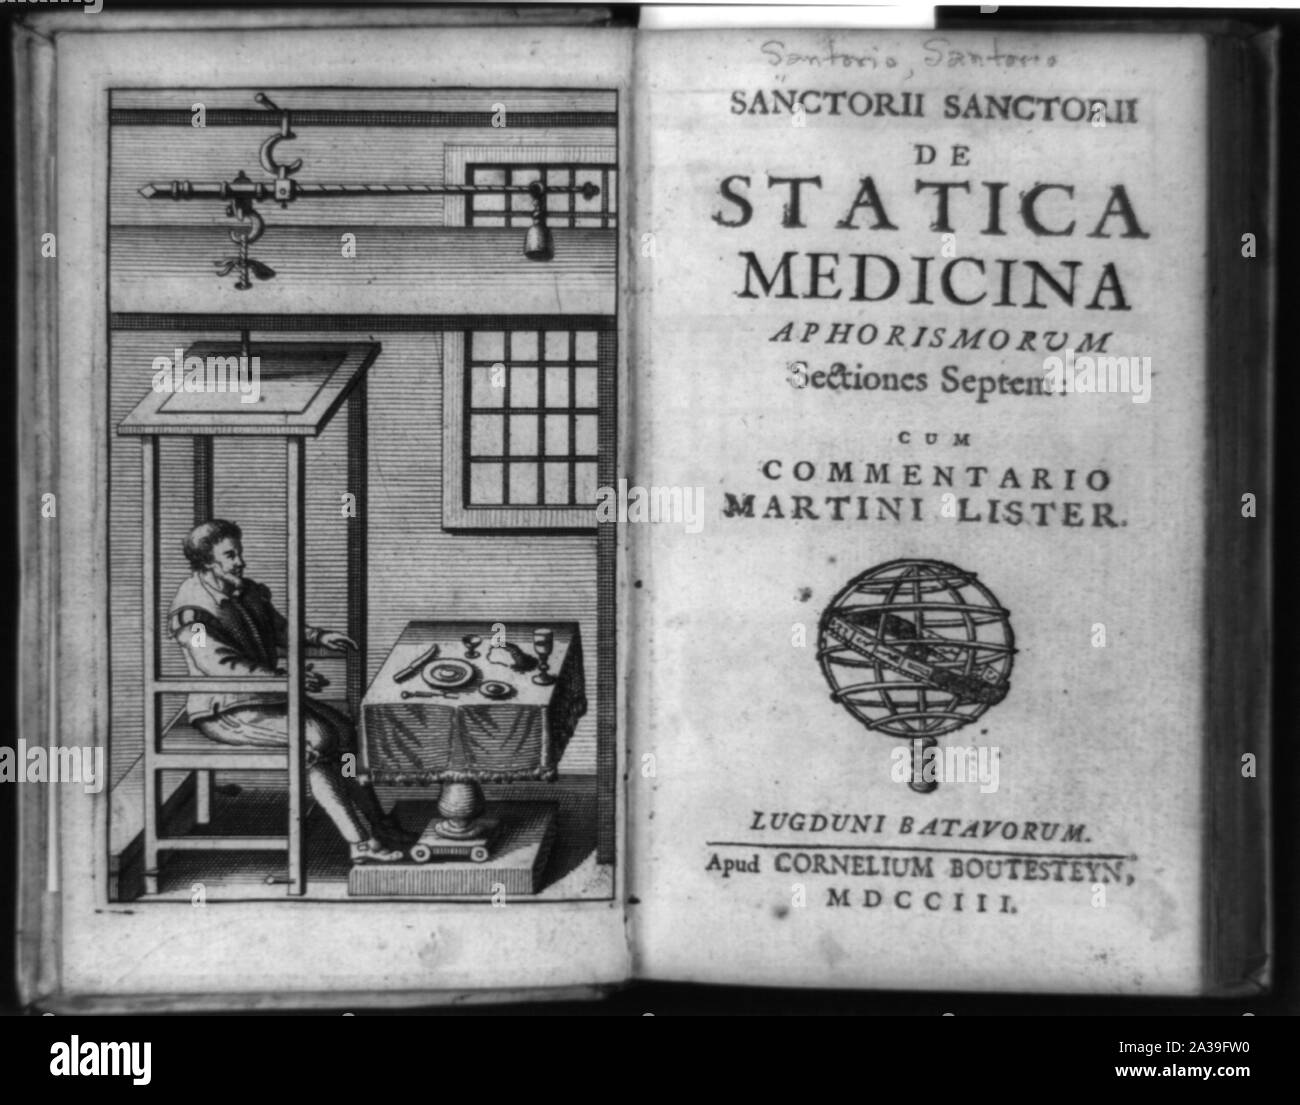 Santorio Santorio assis dans de chaise devant le tableau, une partie de son approche quantitative de la médecine, et la page de titre de De statica medicina aphorismorum Banque D'Images